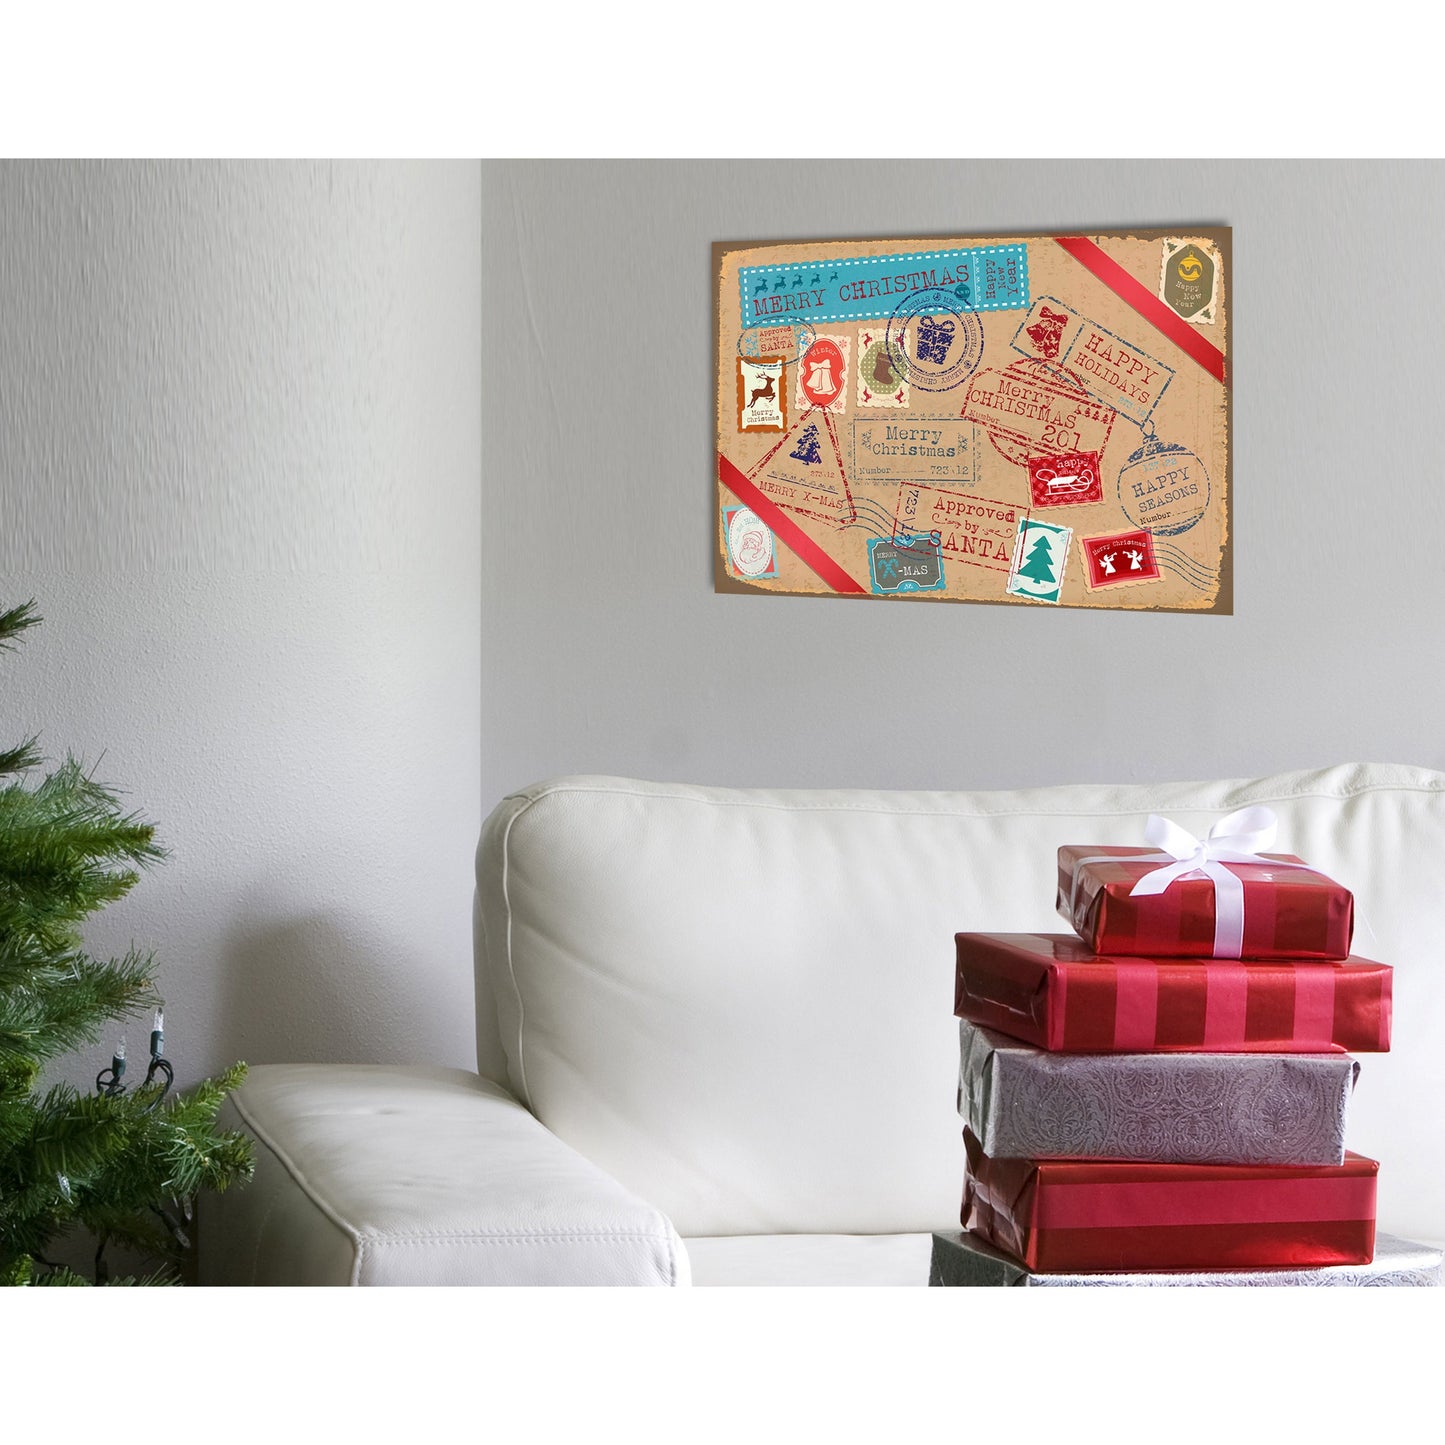 Blechschild - Merry Christmas Postcard Wohnbeispiel